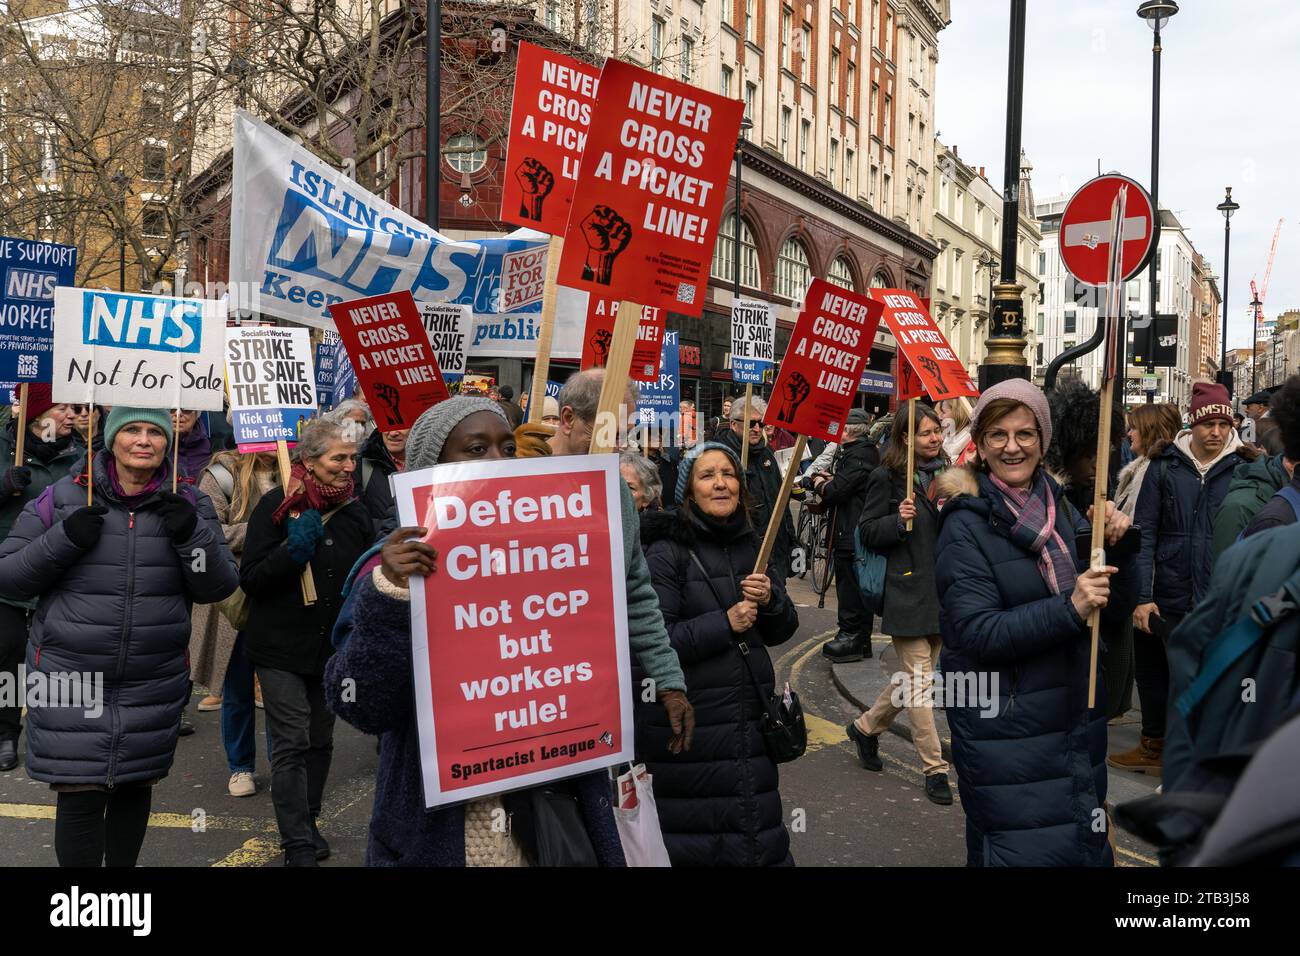 marcha de protesta del NHS en Londres, problemas en el Reino Unido, problemas con el sistema de salud, salvar el NHS Foto de stock